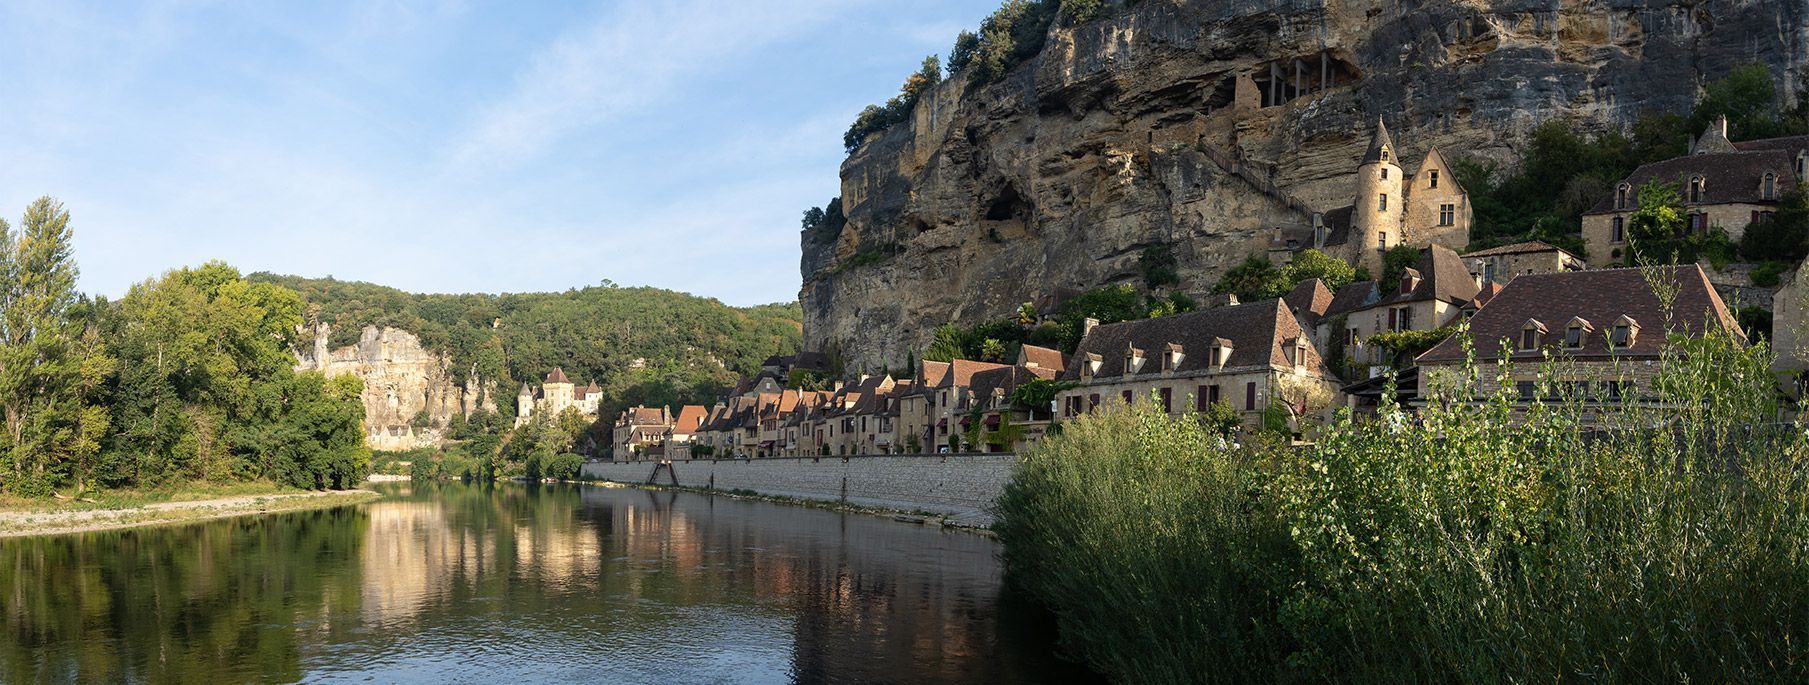 Un beau camping nature entre lacs, forêts et landes fleuries en Dordogne